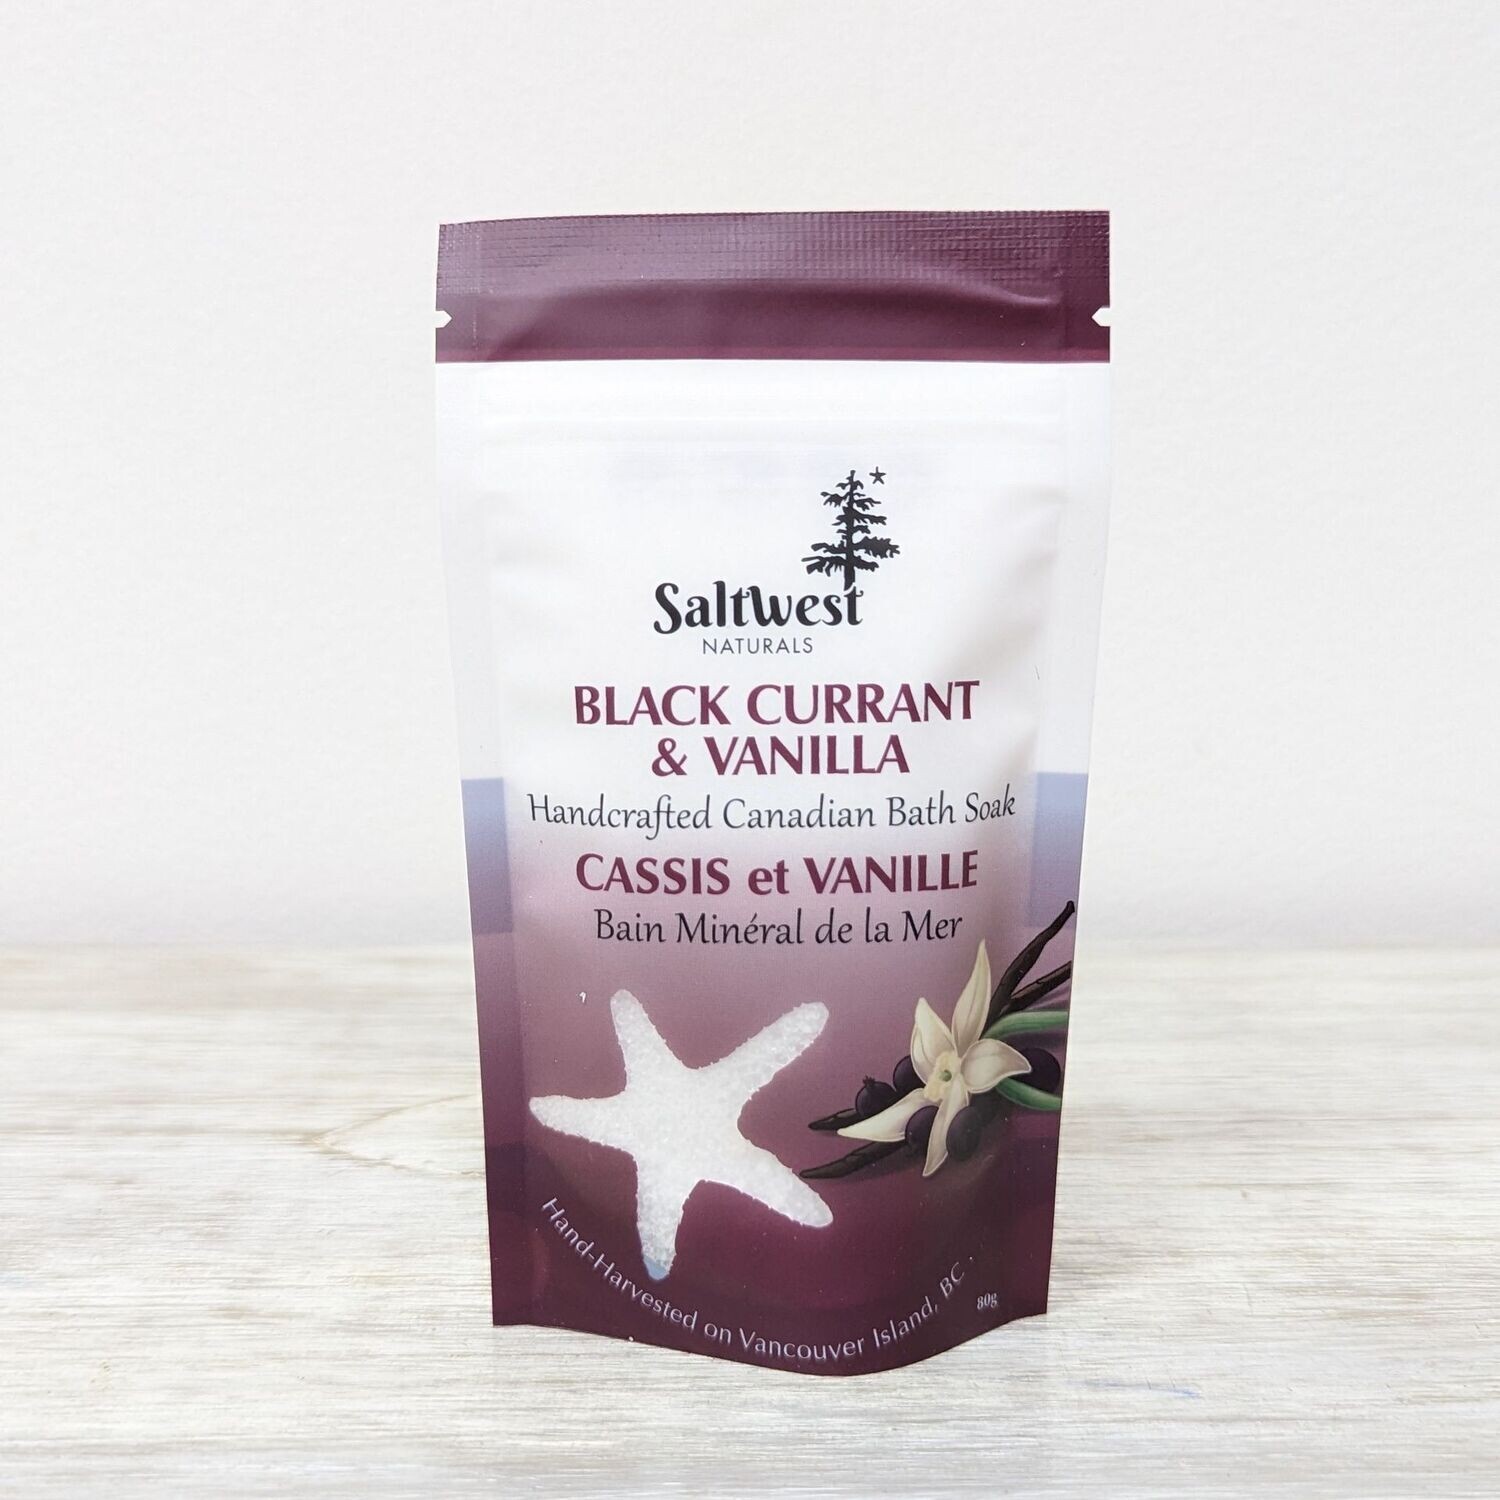 Black Currant and Vanilla Bath Soak